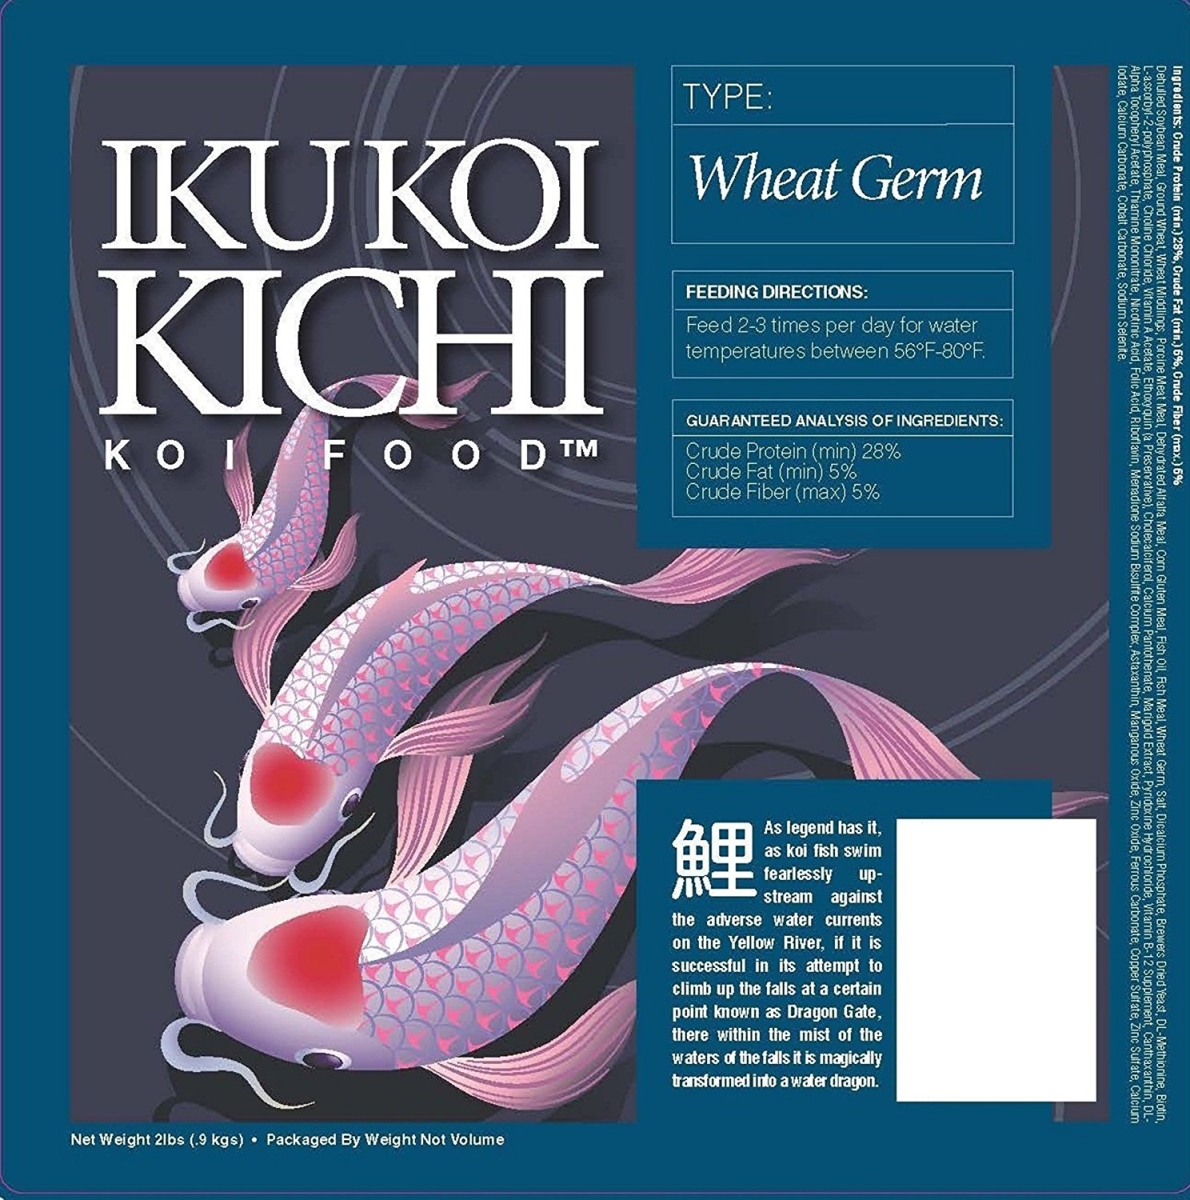 Iku Koi Kichi Kkpfa40 40 Lbs Wheat Germ Cool Water Feeding Fish Food